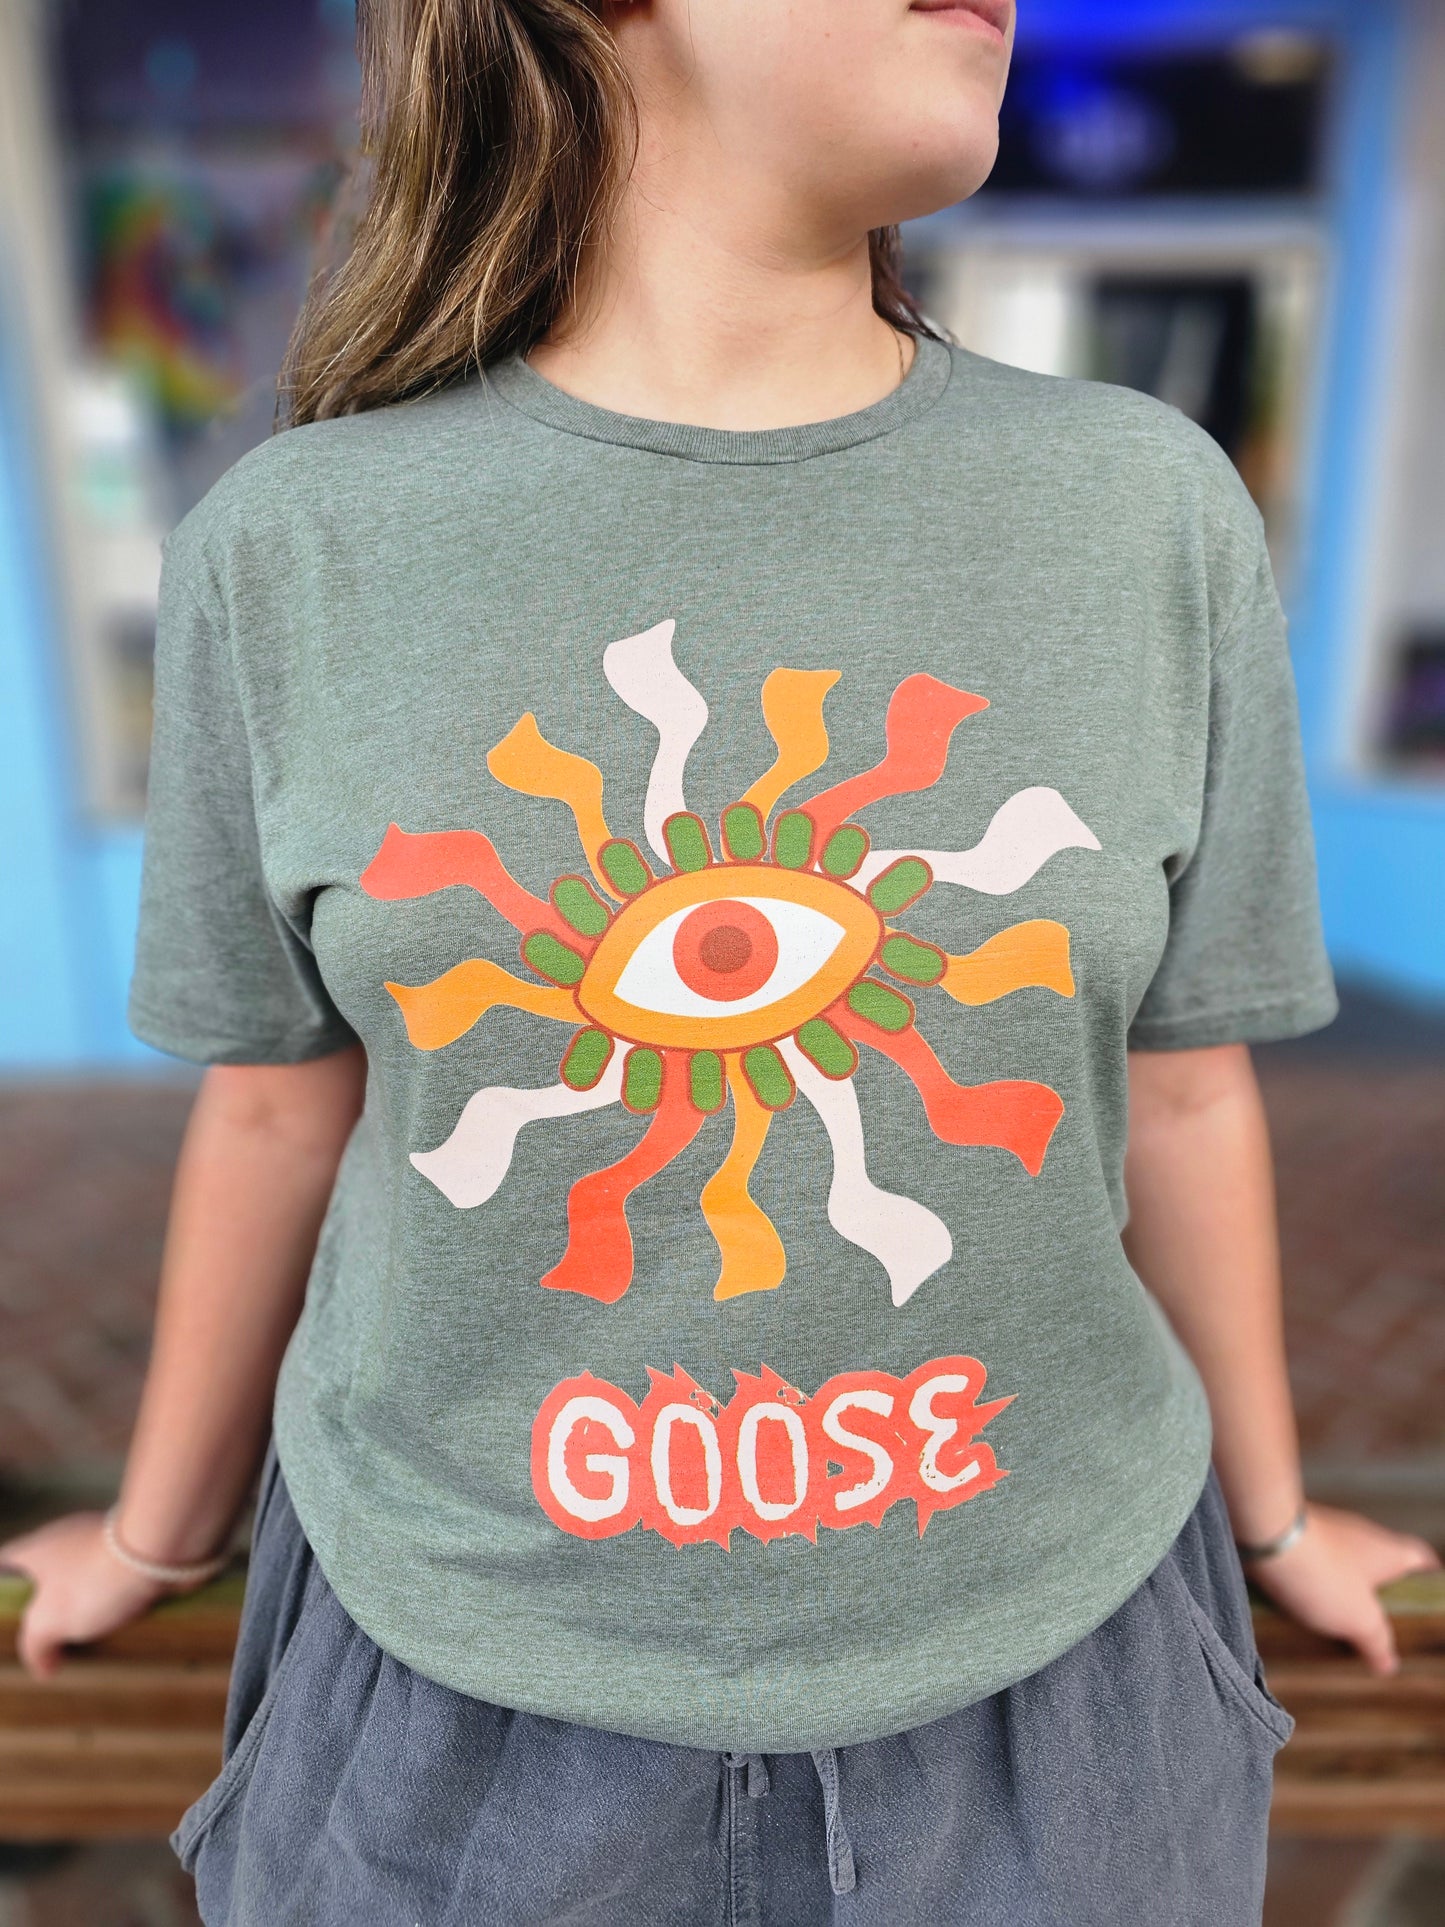 Goose Seeing Eye Tee